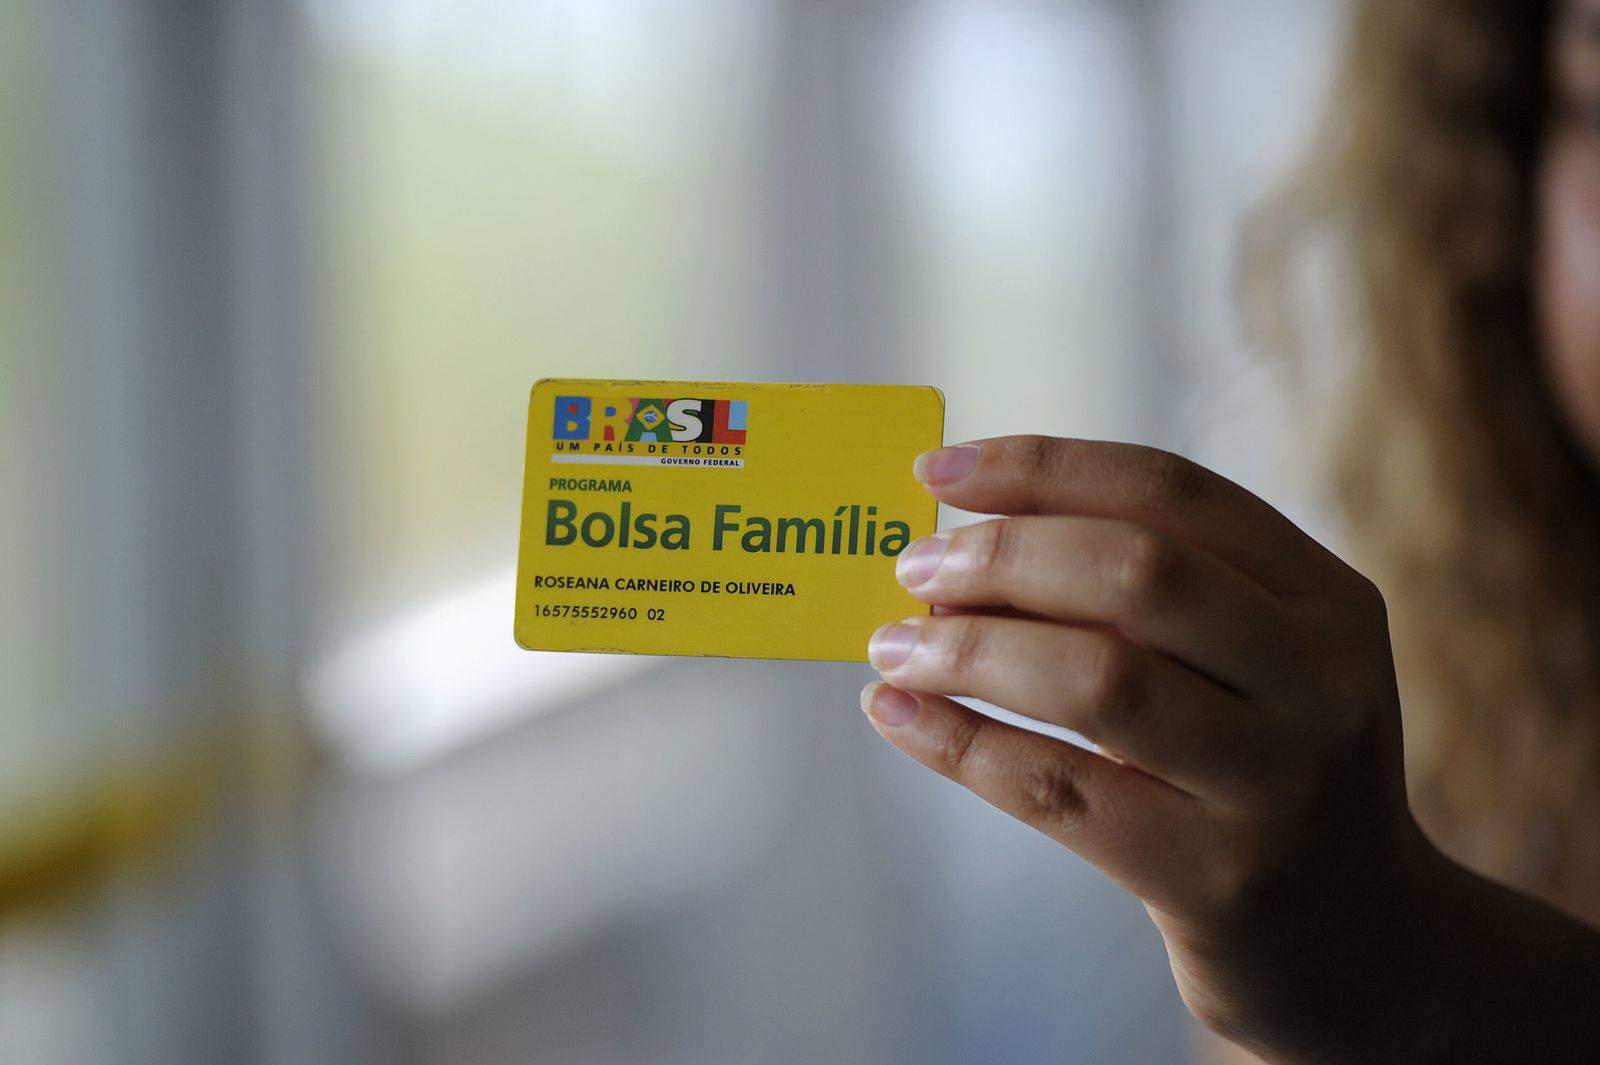 Bolsa Família: Bahia entrega mais de R$ 332 milhões aos beneficiários